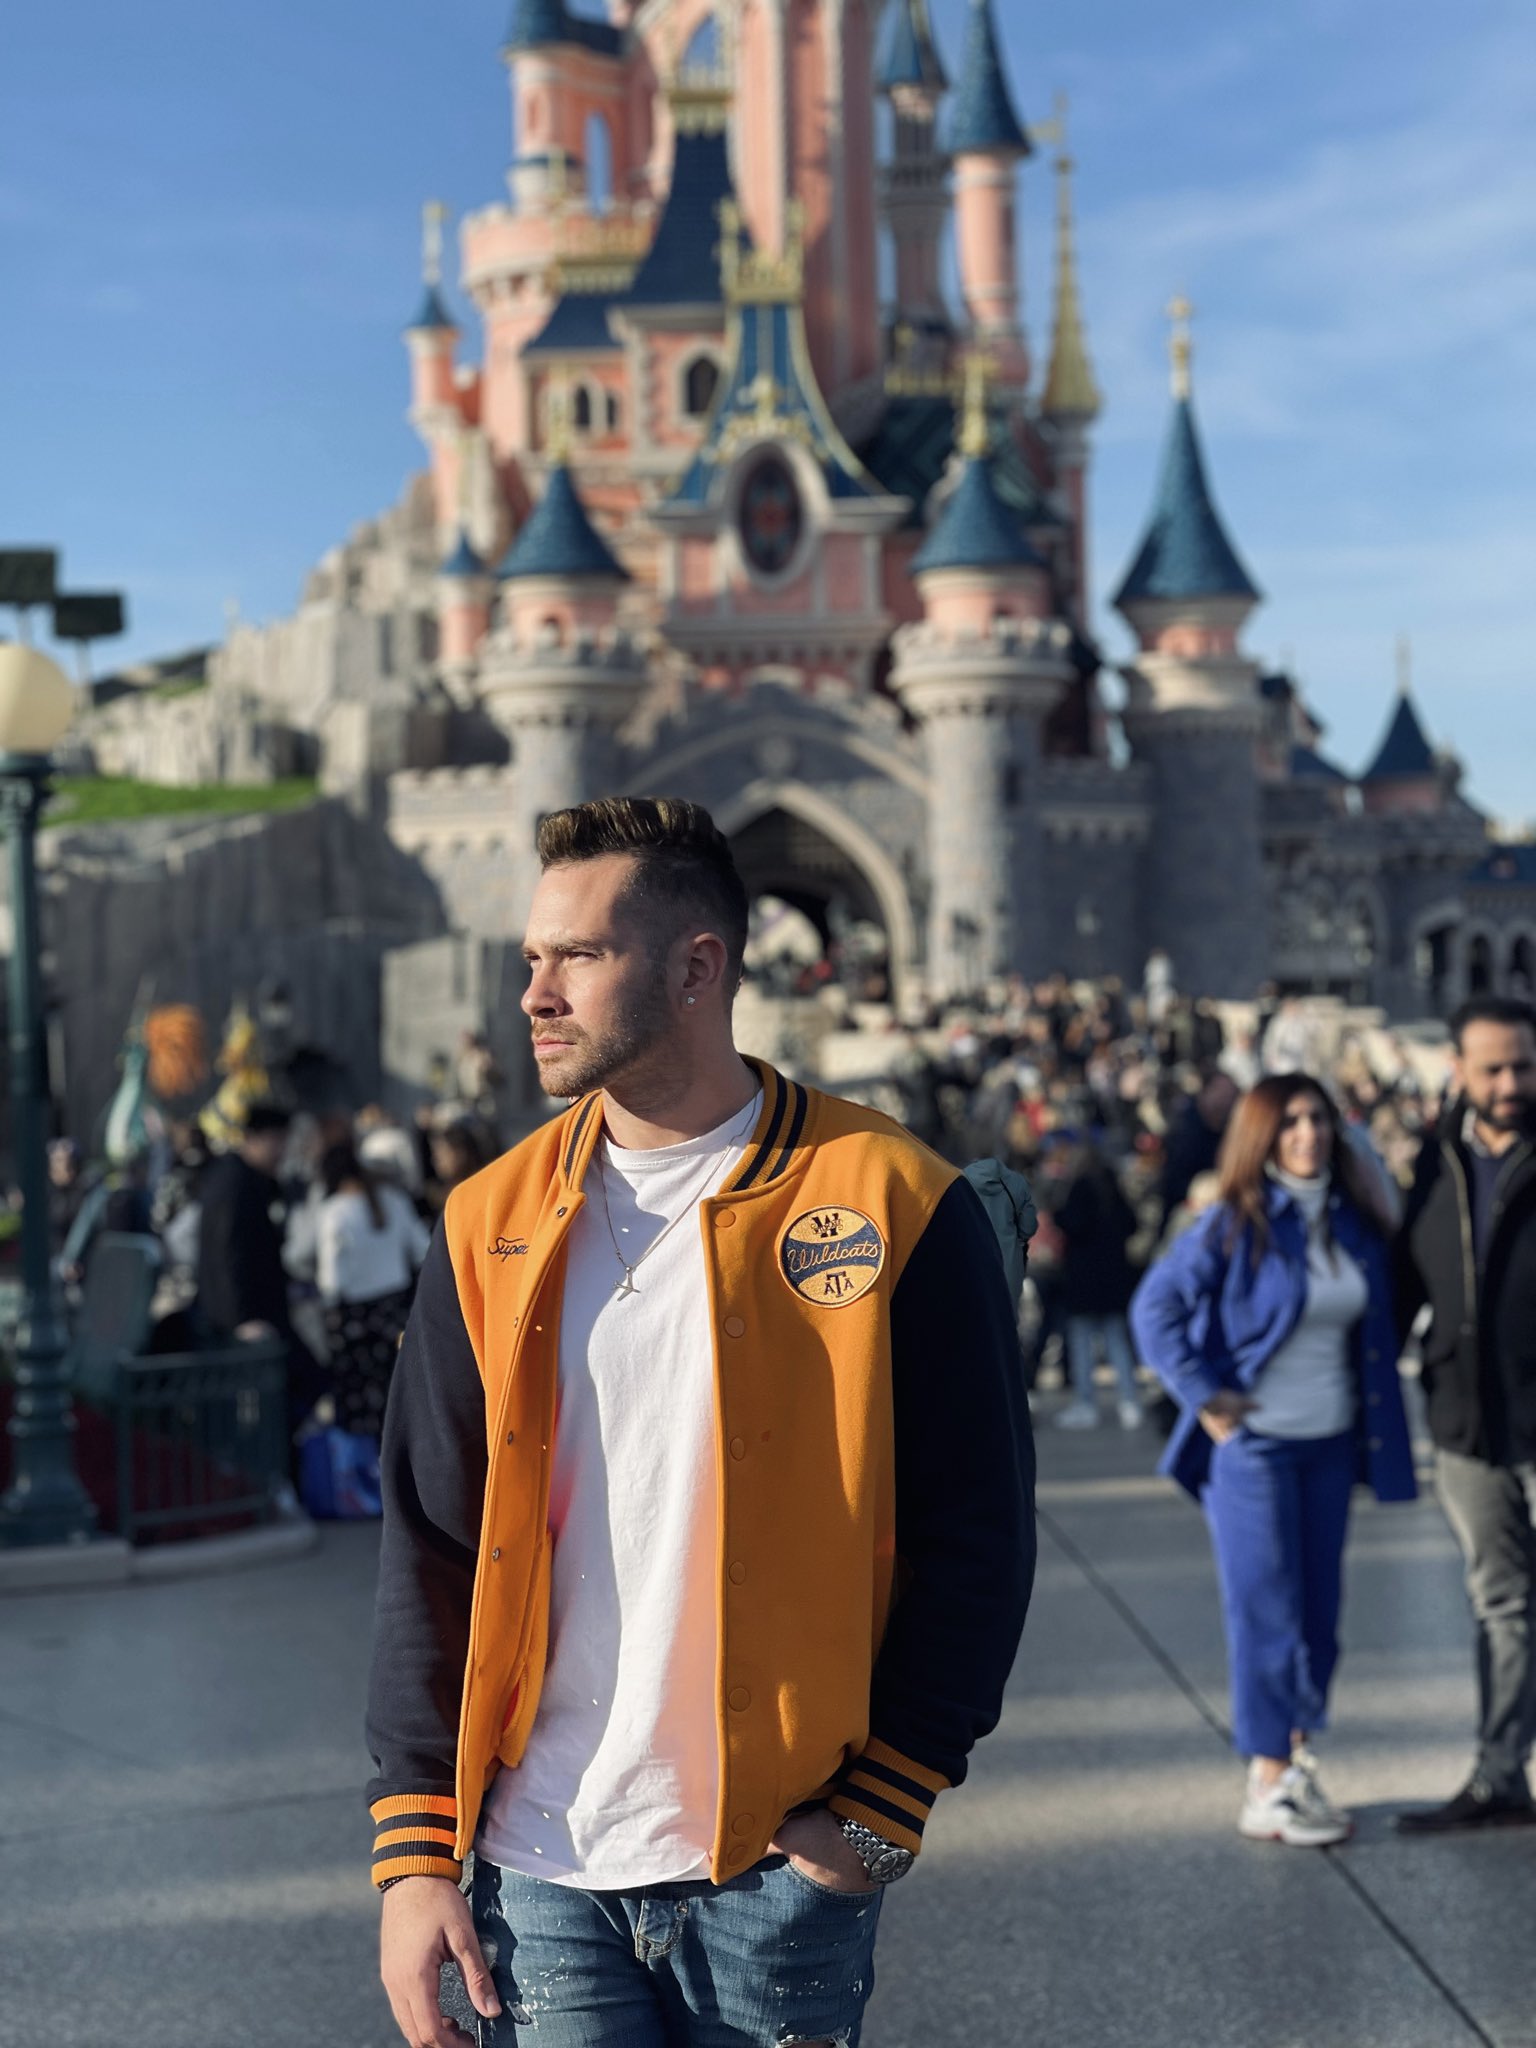 Conhecendo a Disneyland Paris – França – Trips da Pam